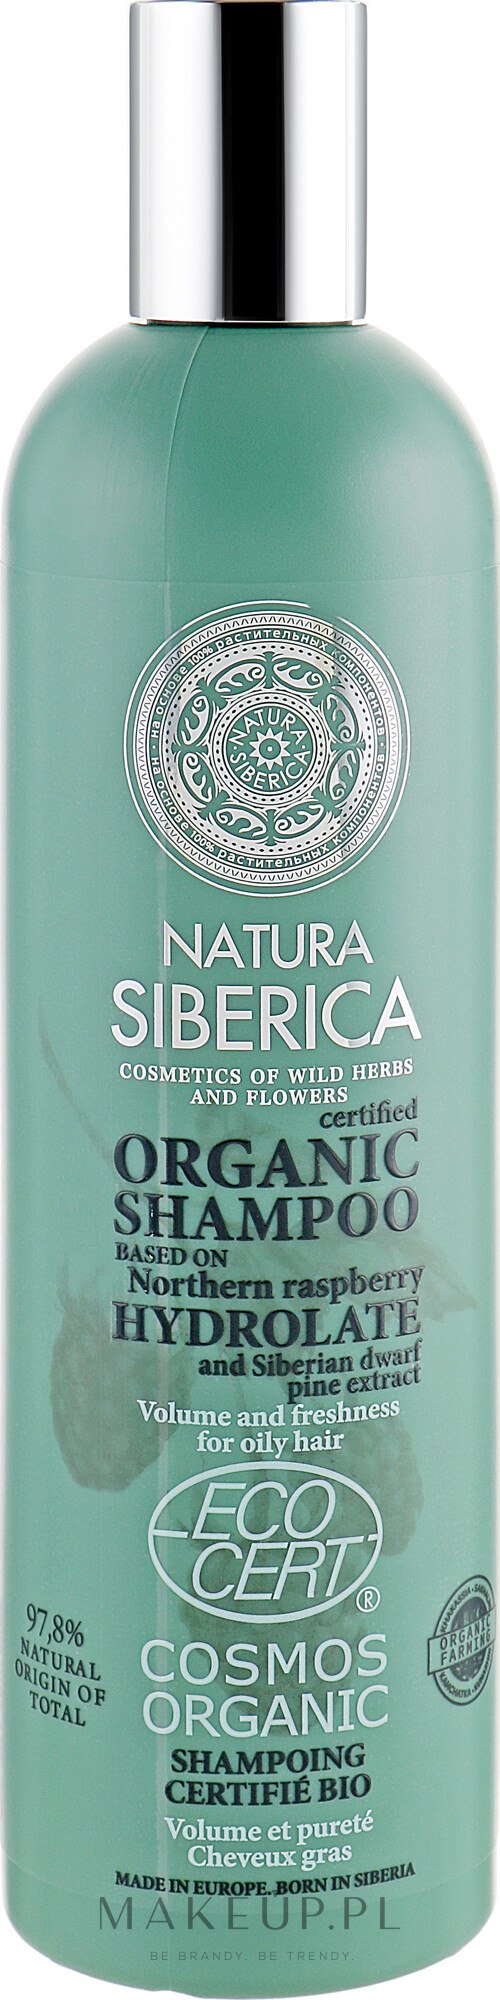 szampon natura siberica